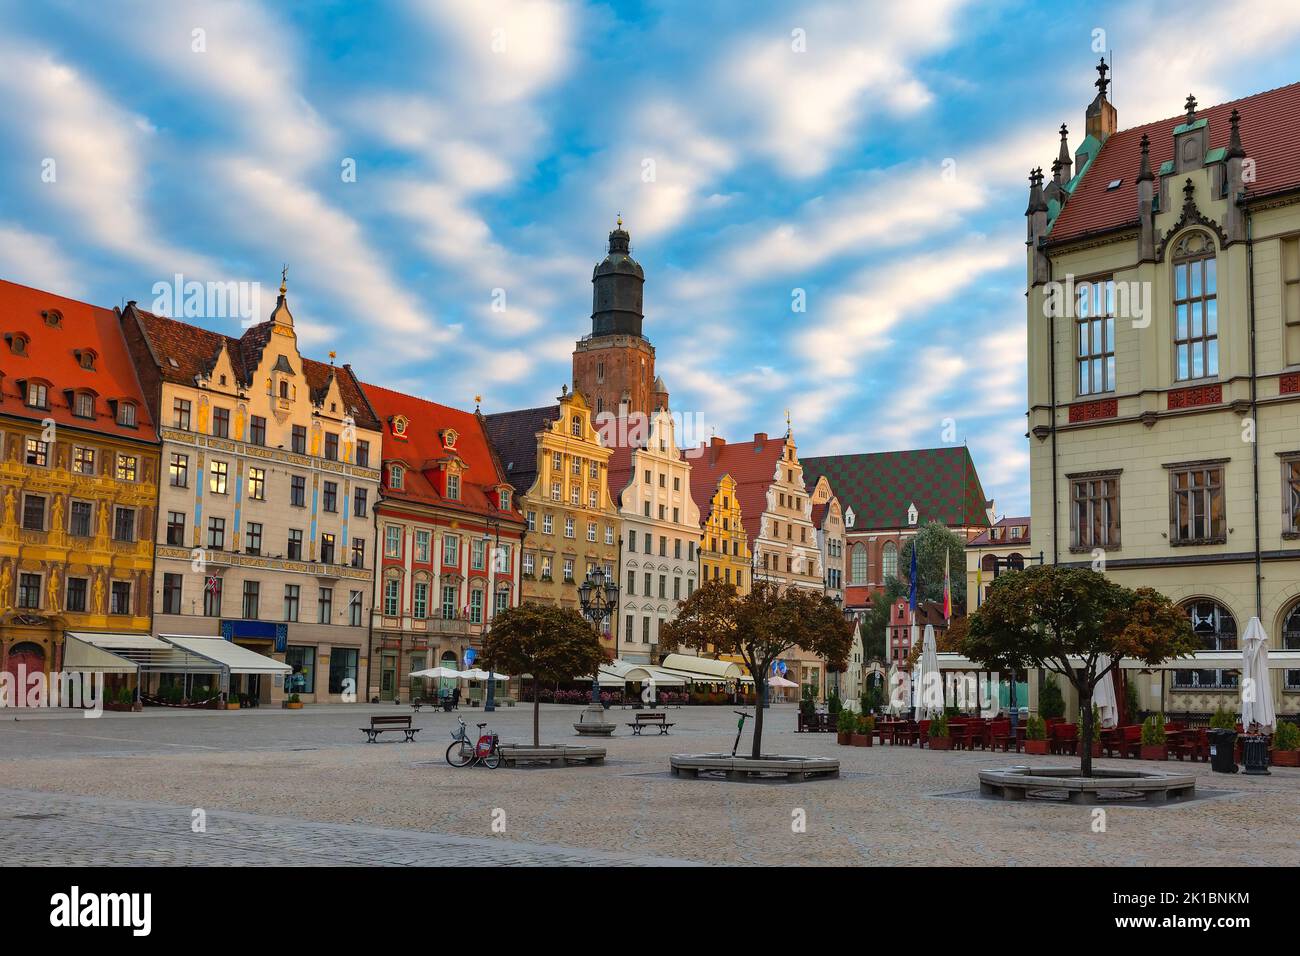 Case storiche tradizionali multicolori sulla piazza del mercato in mattinata soleggiata, Città Vecchia di Breslavia, Polonia Foto Stock